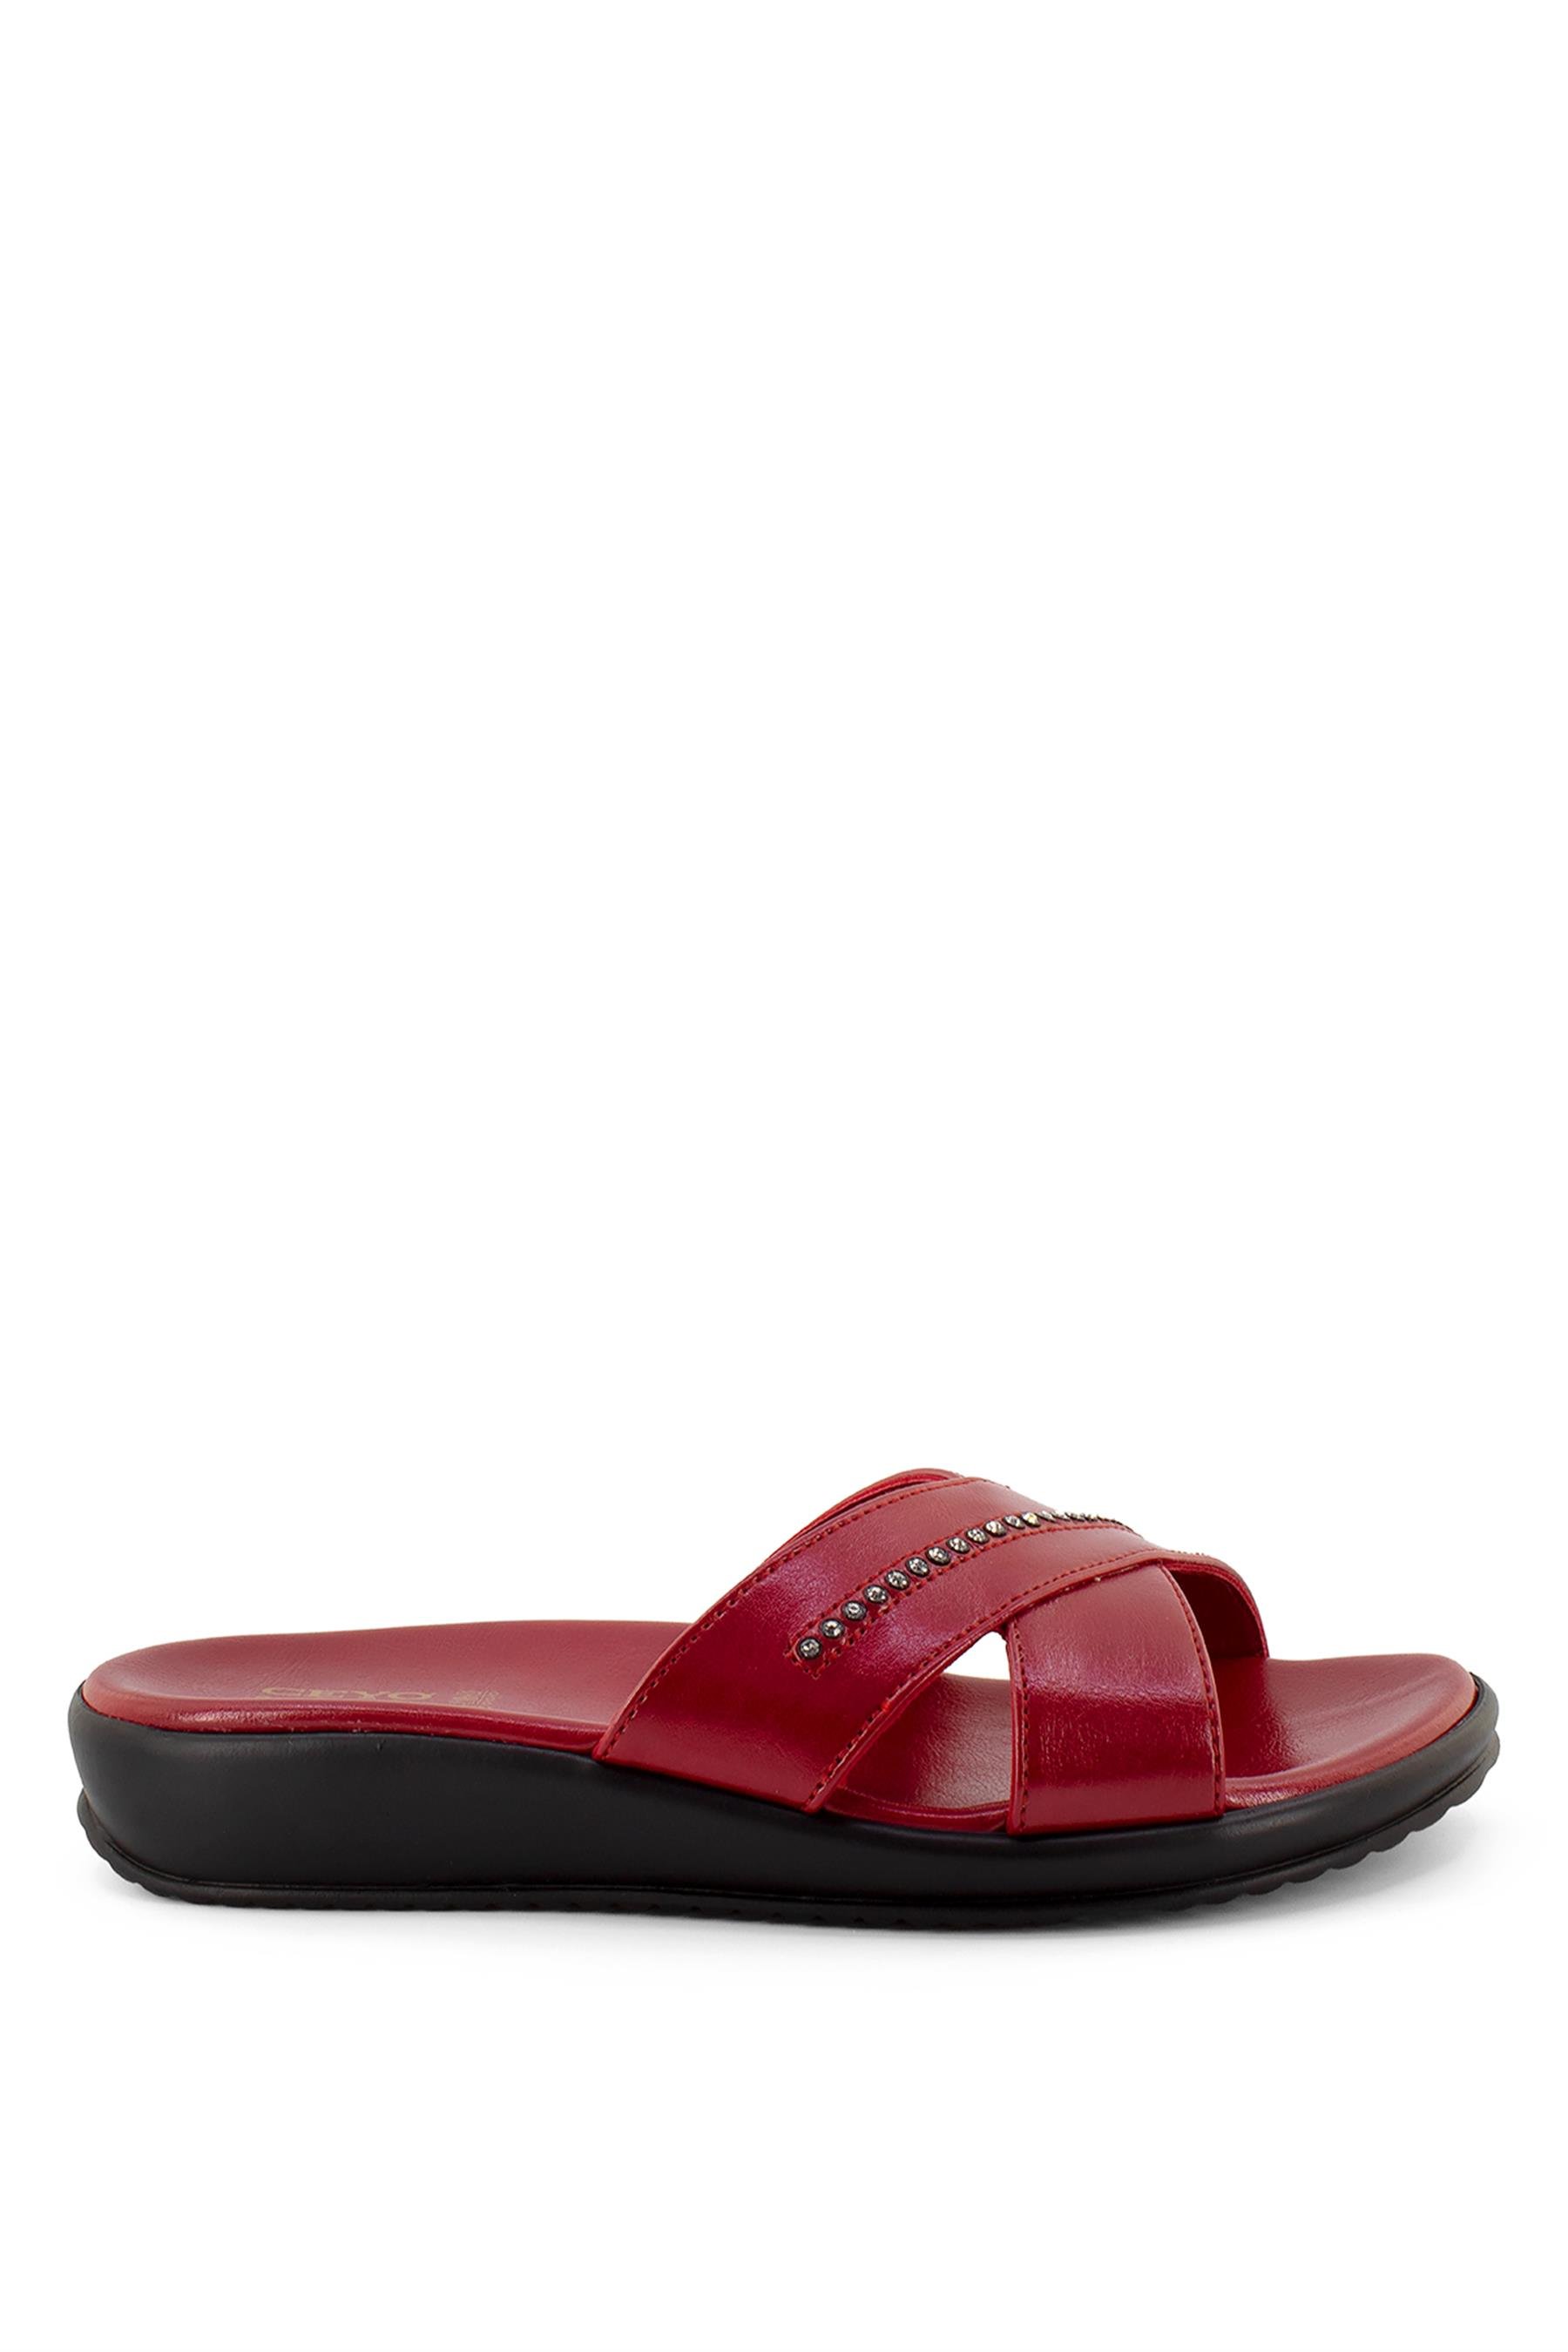 Ceyo 9200-16 Kadın Terlik Kırmızı - Ayakkabı Fuarı Elit